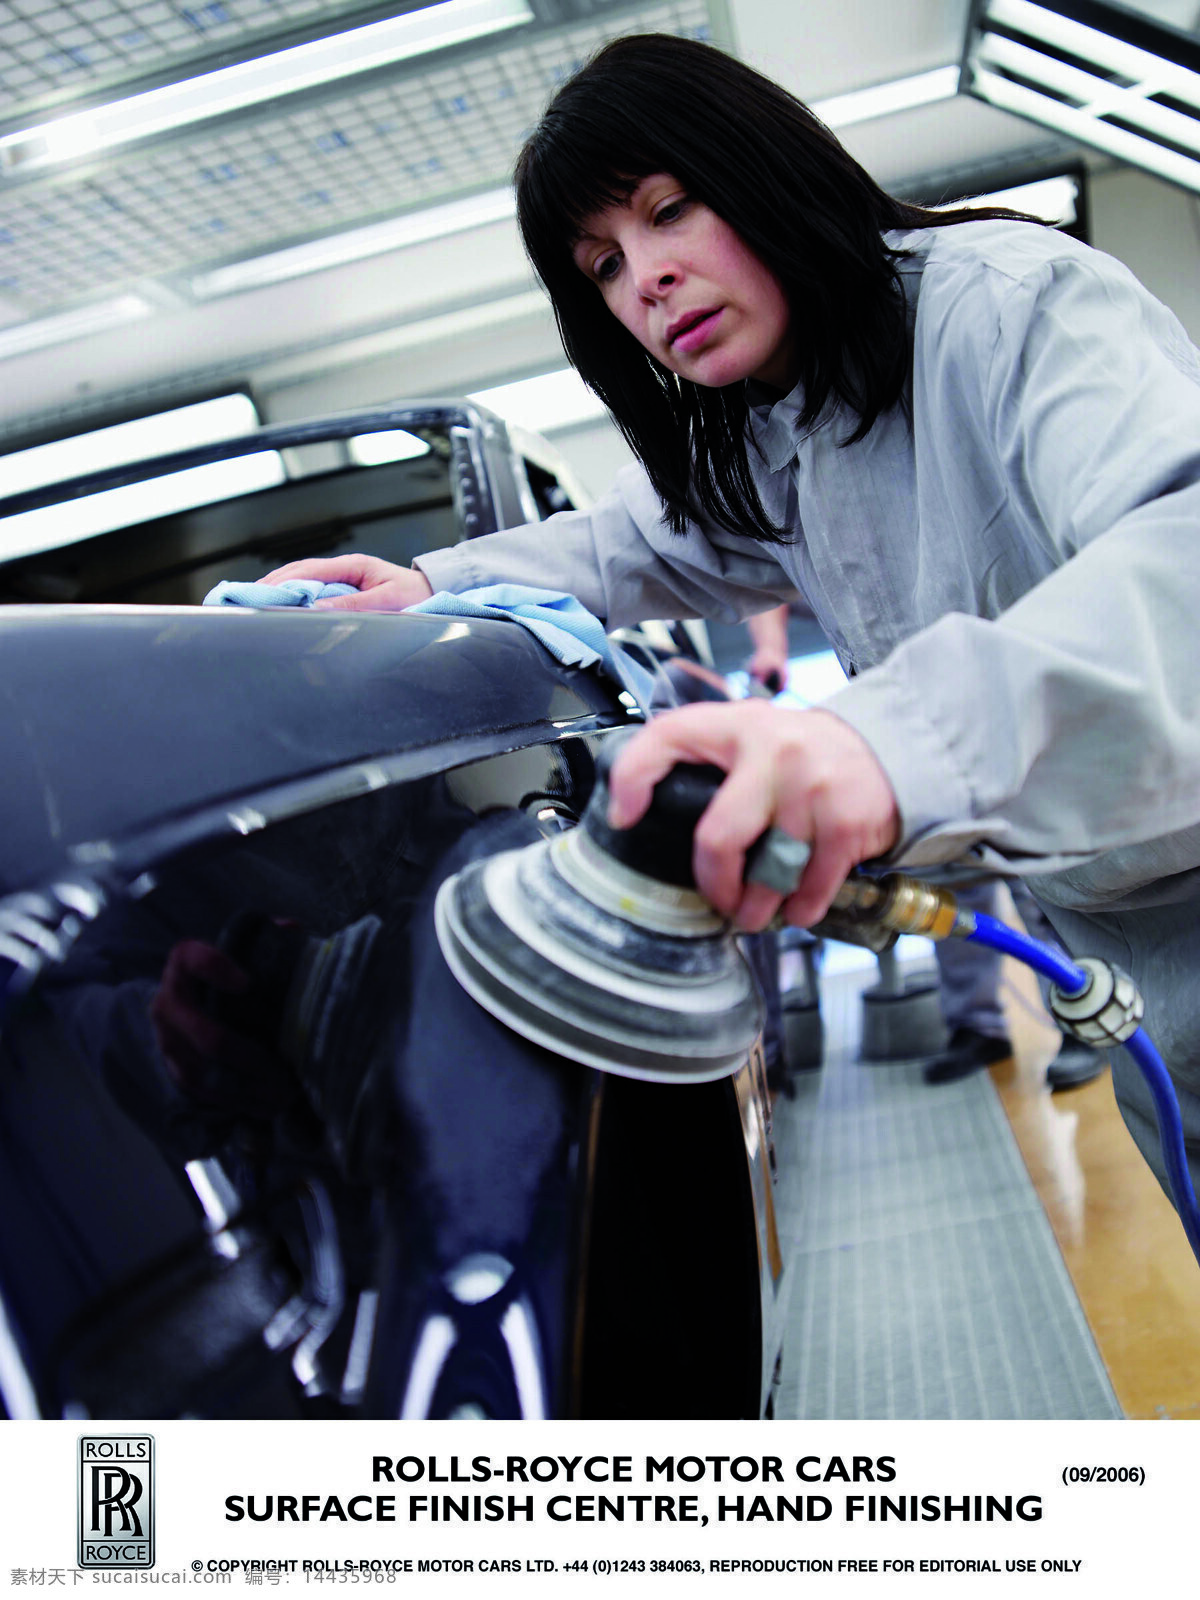 劳斯莱斯 生产线 rolls royce 宝马 公司 旗下 品牌 车间生产线 表面处理中心 手工抛光 女工 工业生产 现代科技